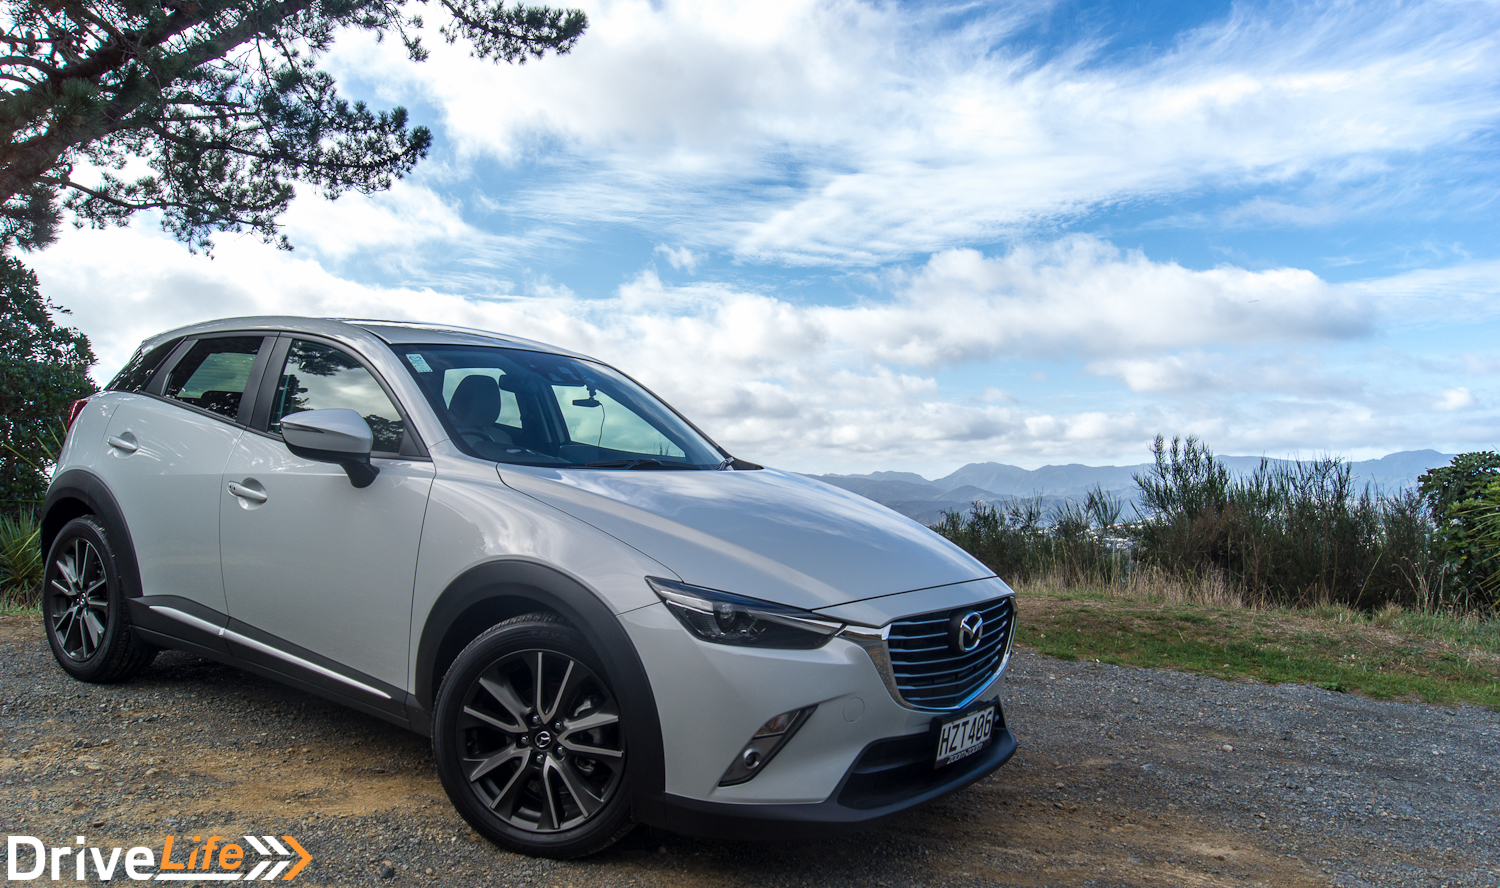 Car-Review-2016-Mazda-CX-3-14.jpg